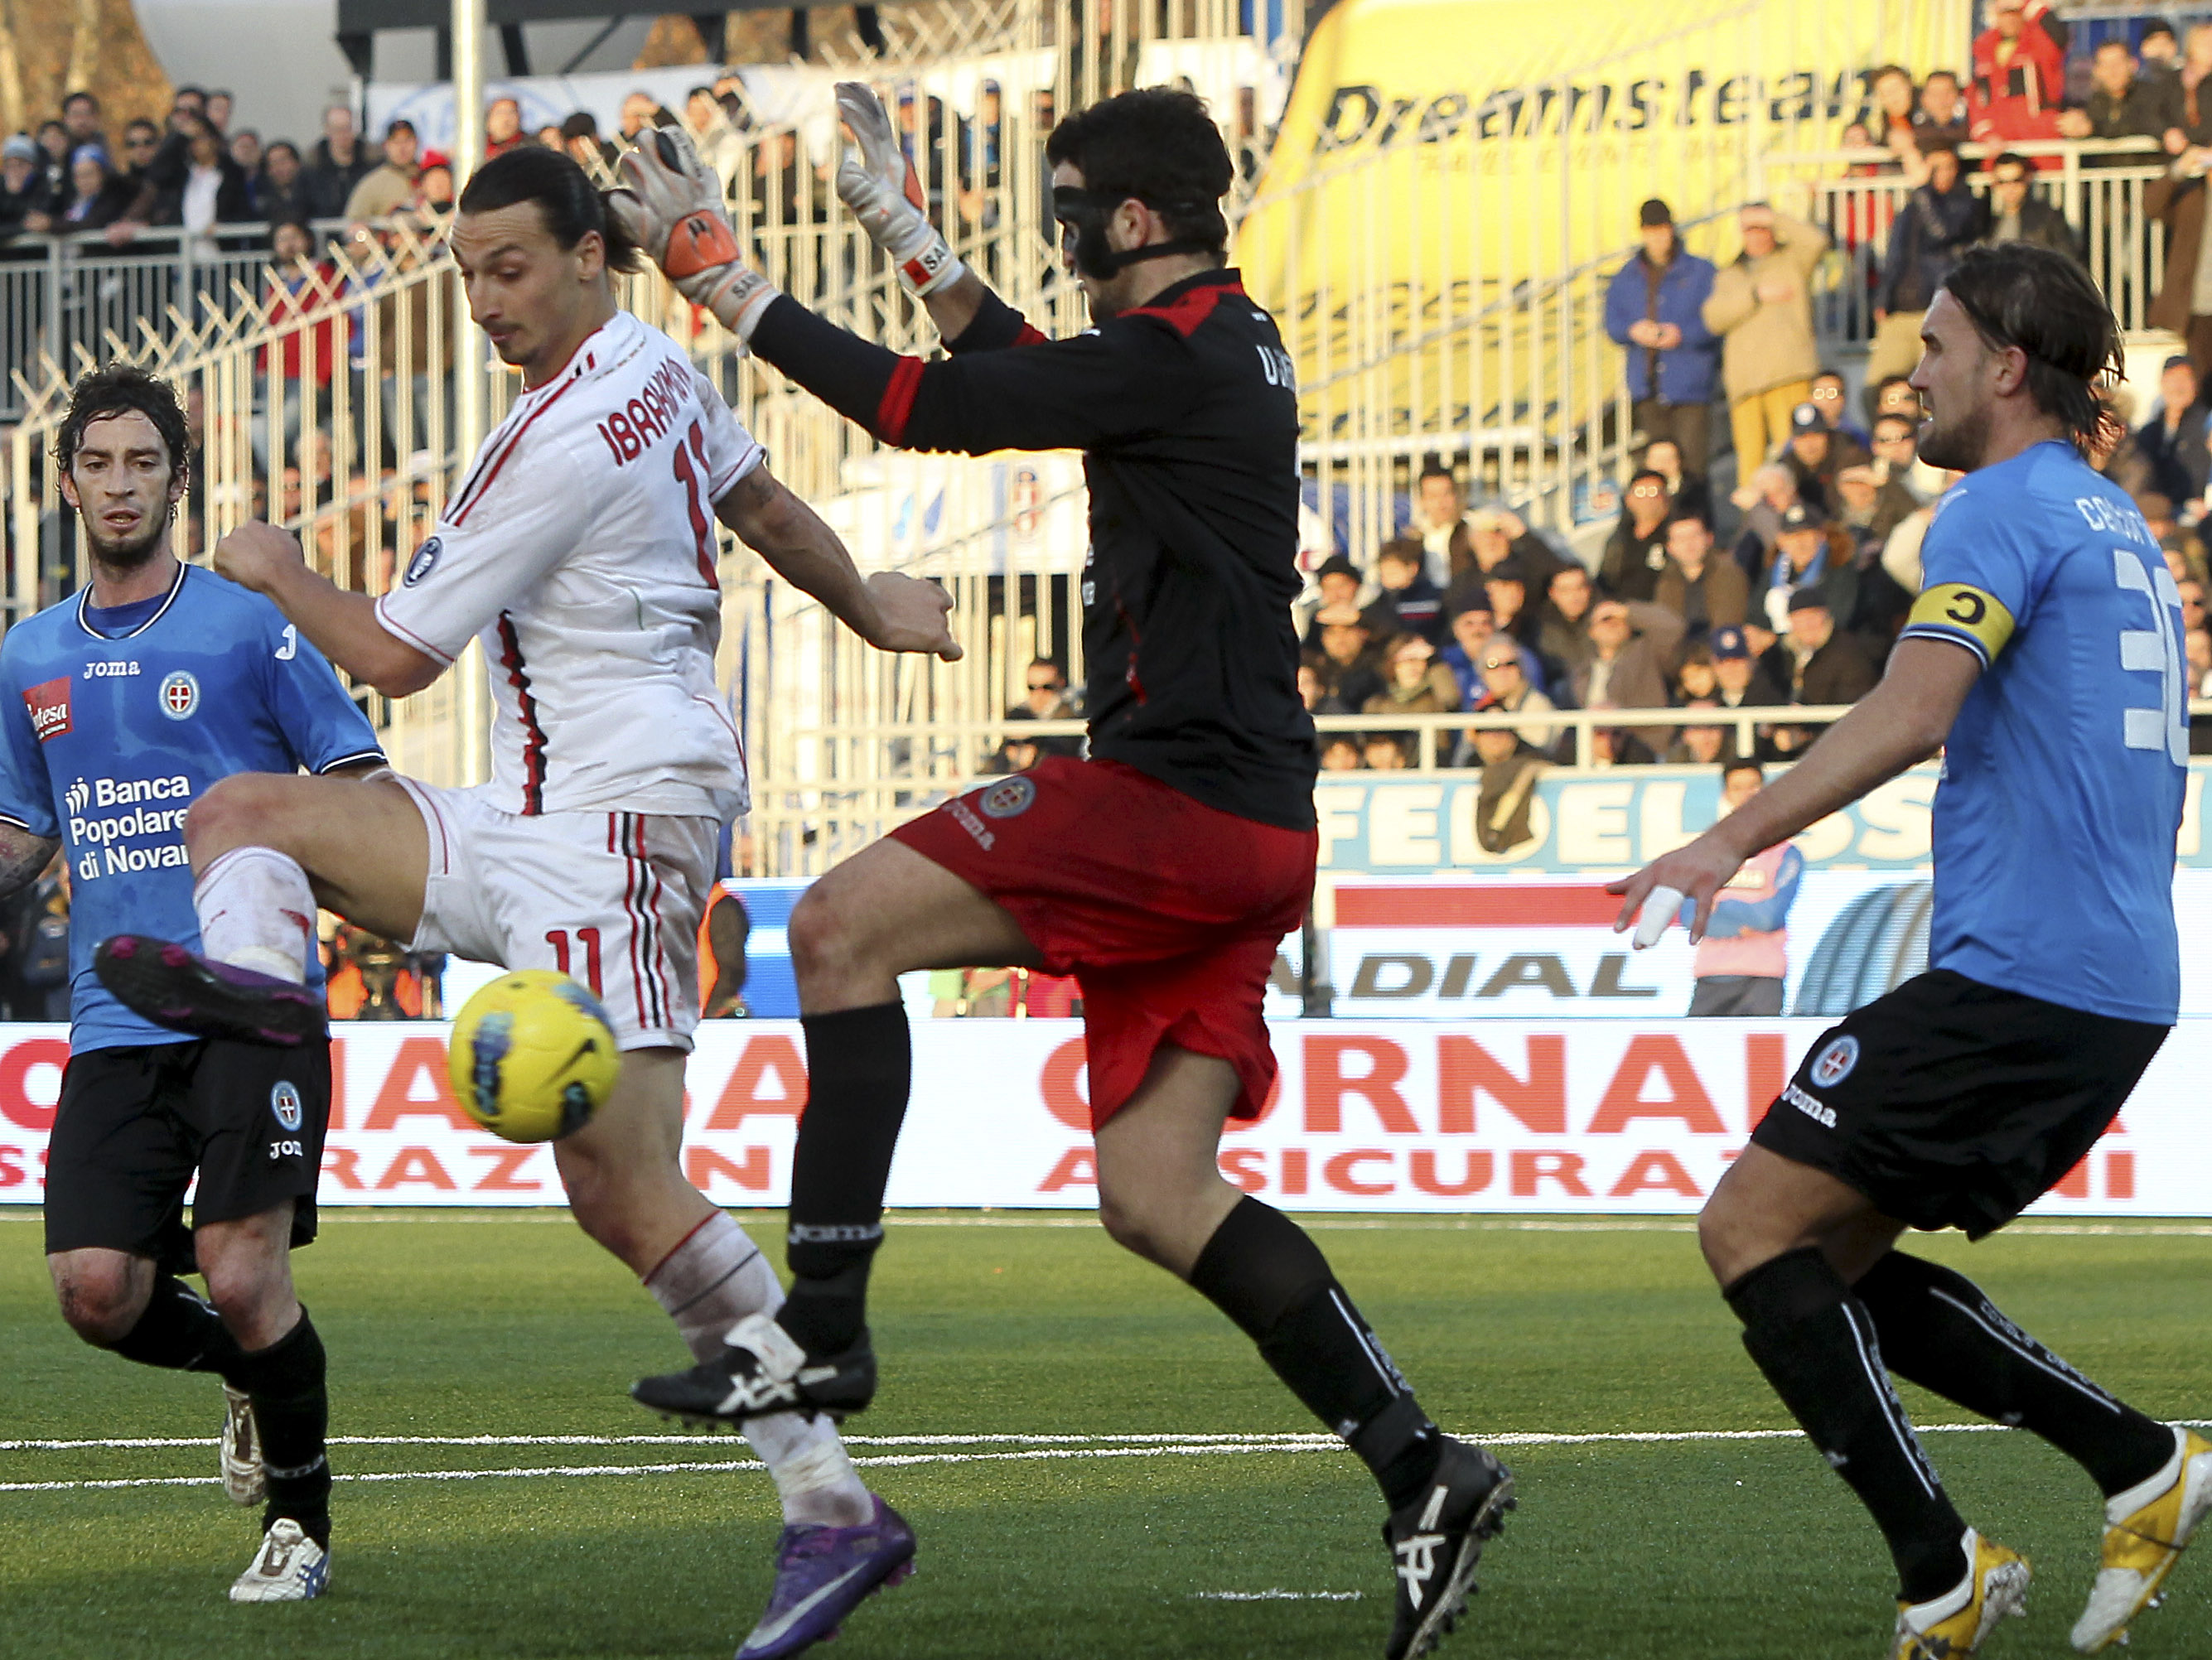 I söndags gjorde han det igen: Med ett läckert klackmål gjorde han 3-0 mot Novara. 